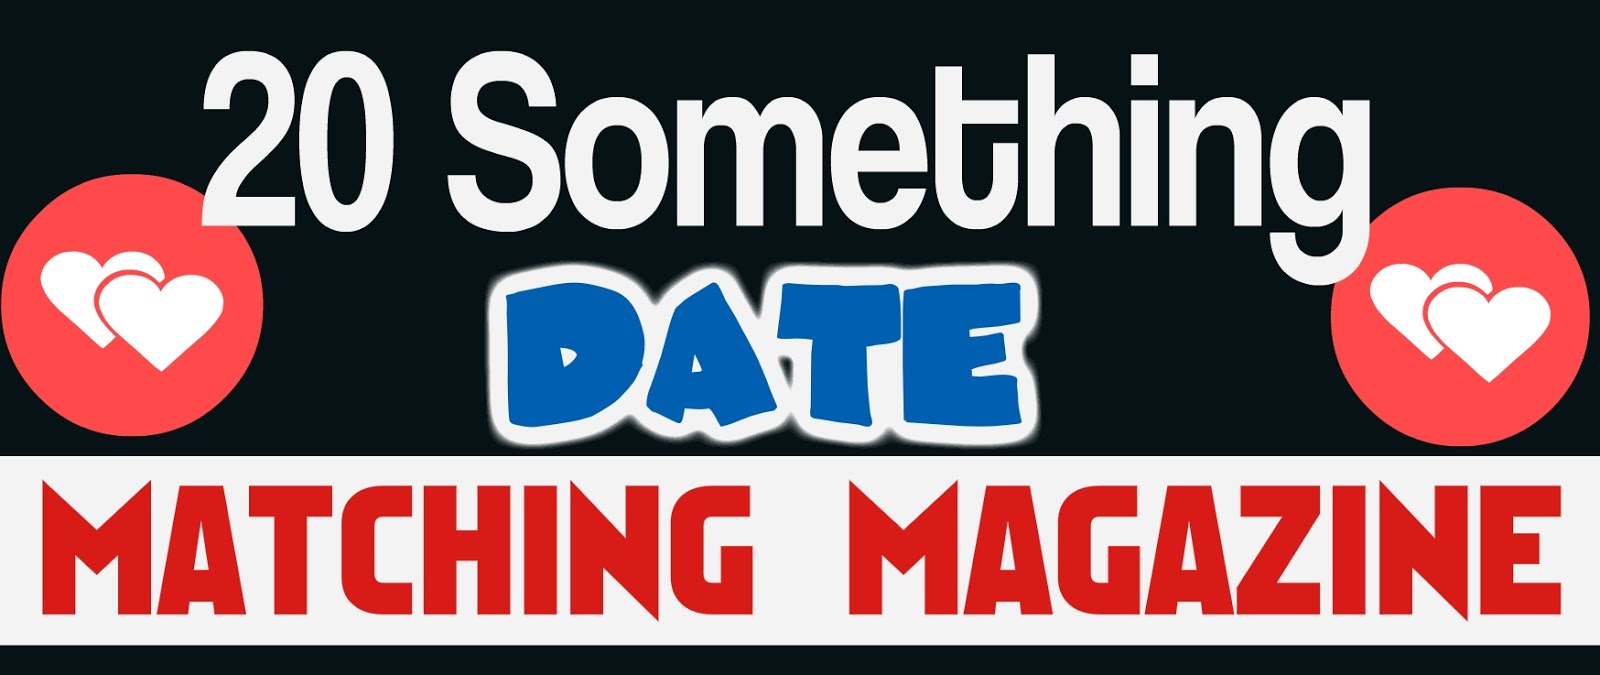 20 Something Dating Magazine